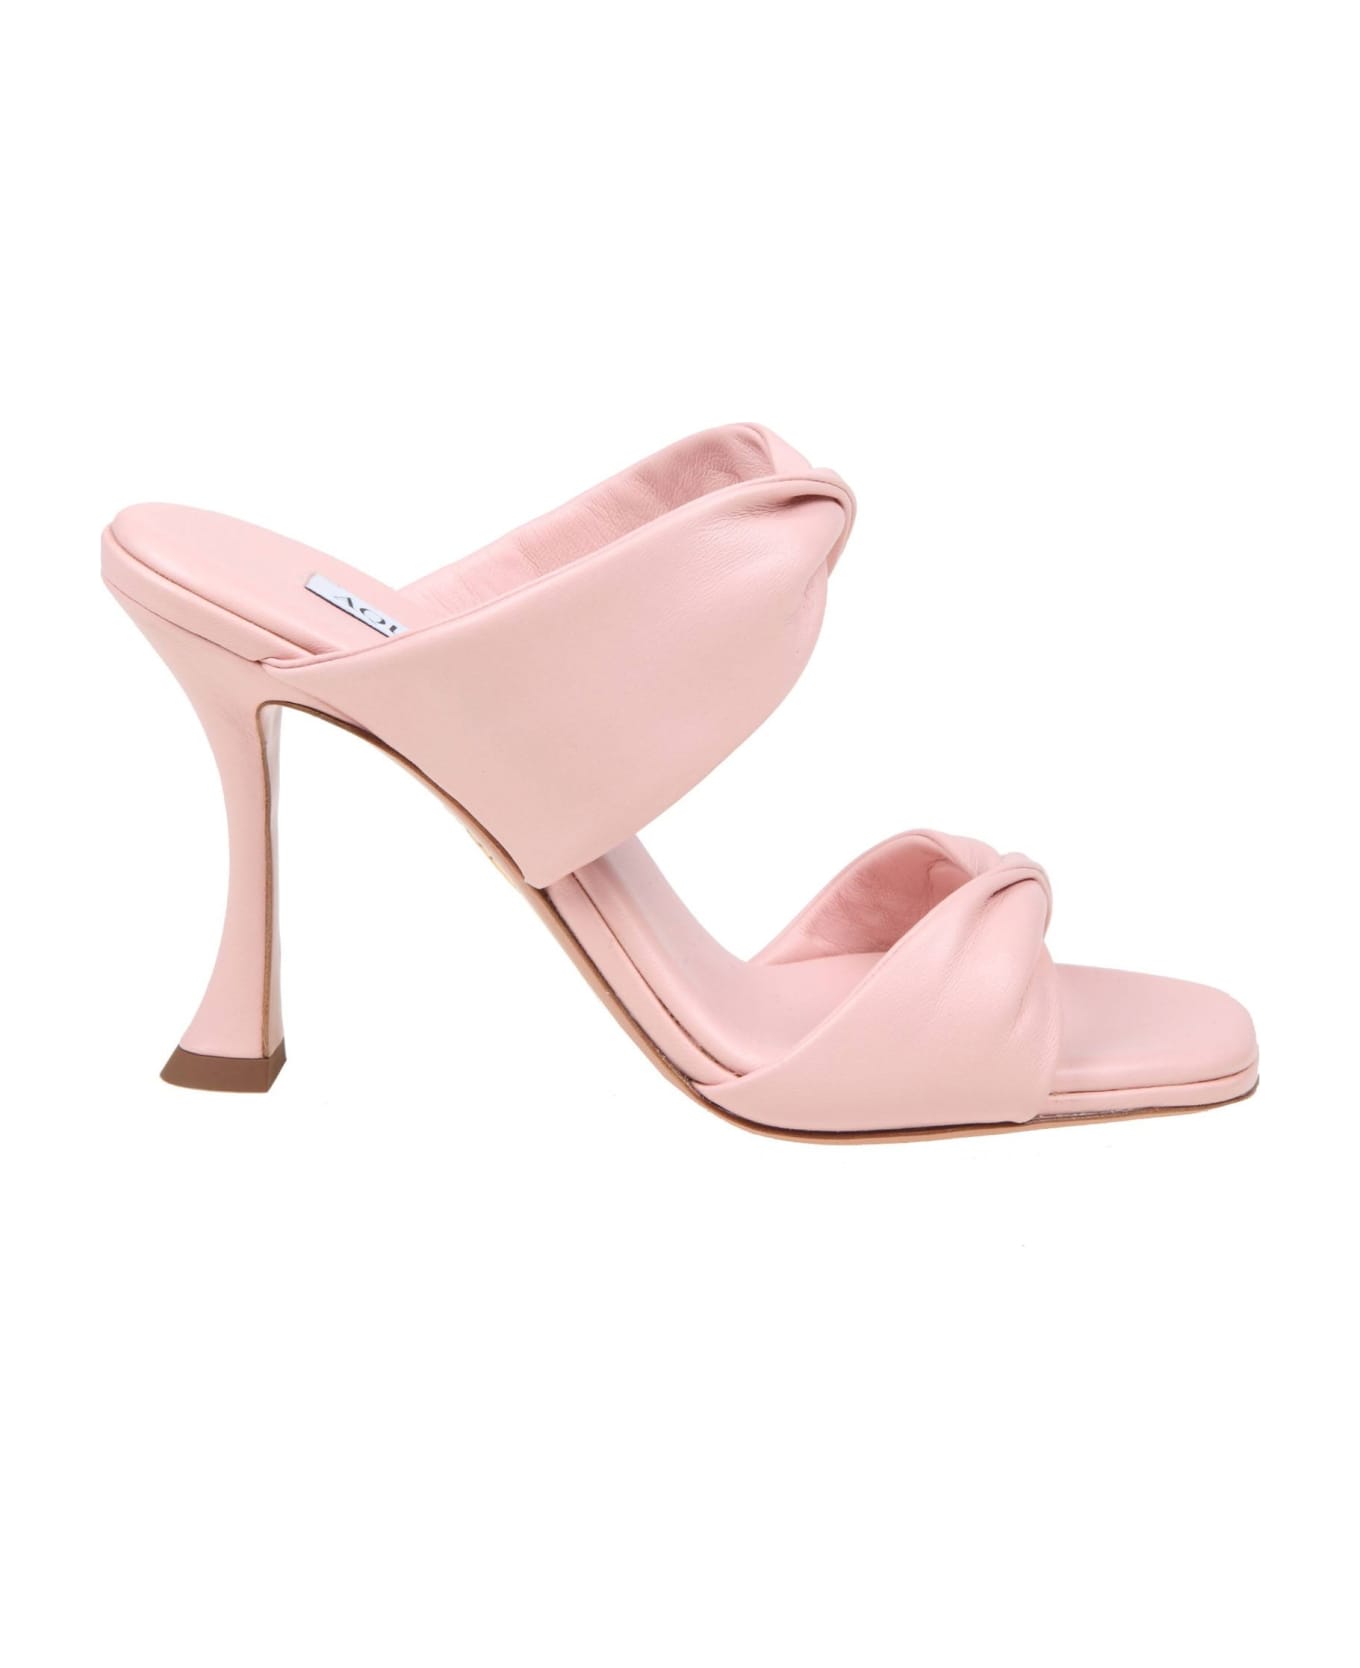 Aquazzura Twist 95 Sandal In Pink Leather - PINK